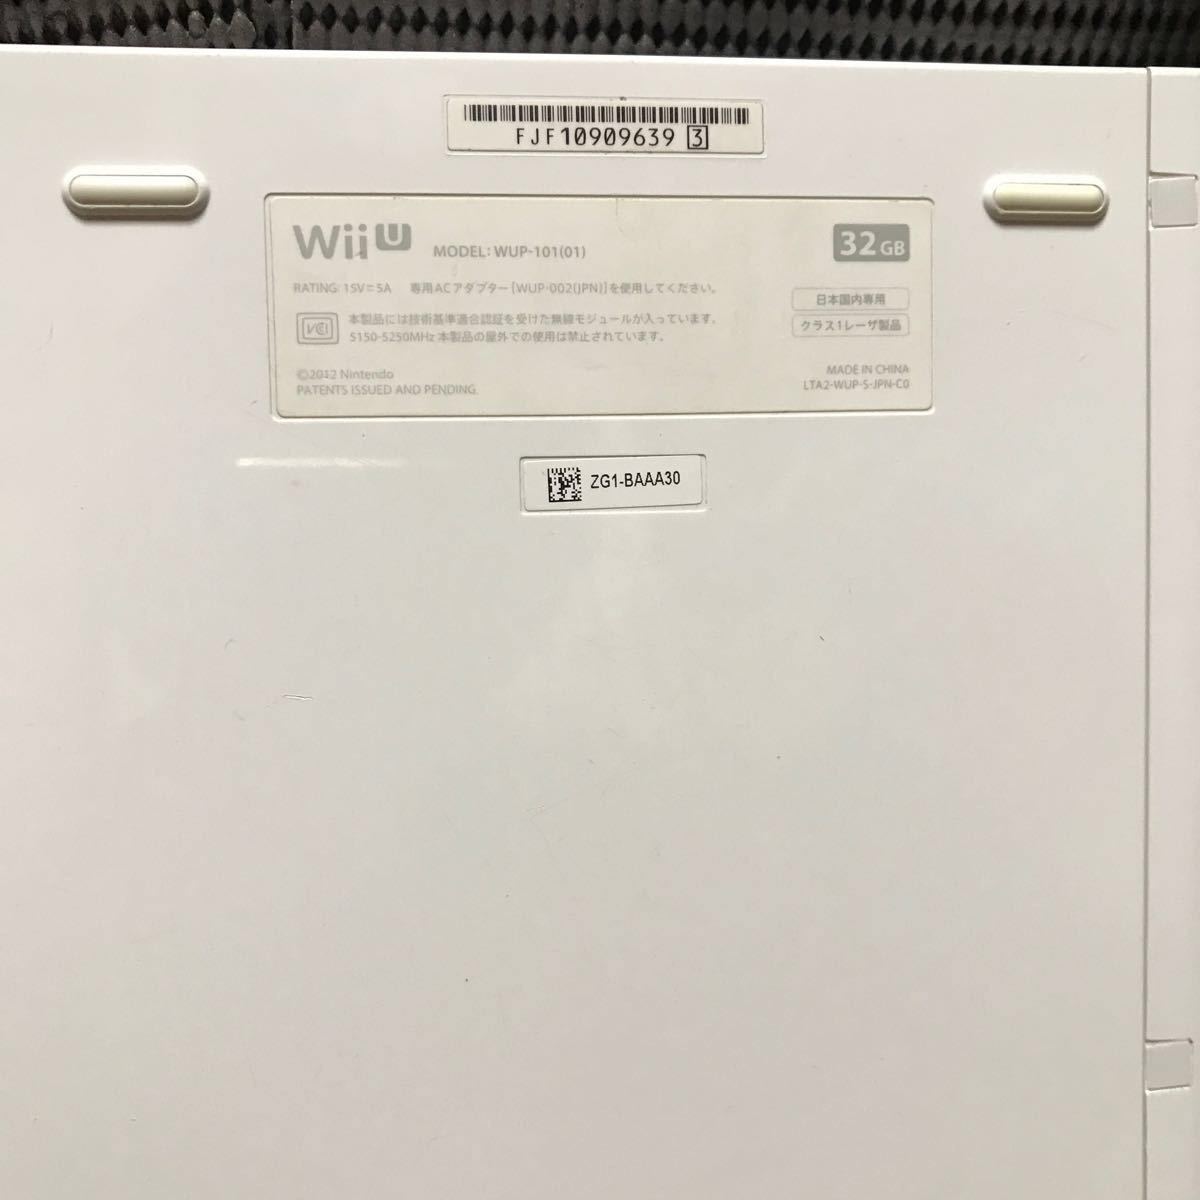 Wii U 32GB NEWスーパーマリオブラザーズU 内蔵・wiiパーティーU 内蔵　393.314